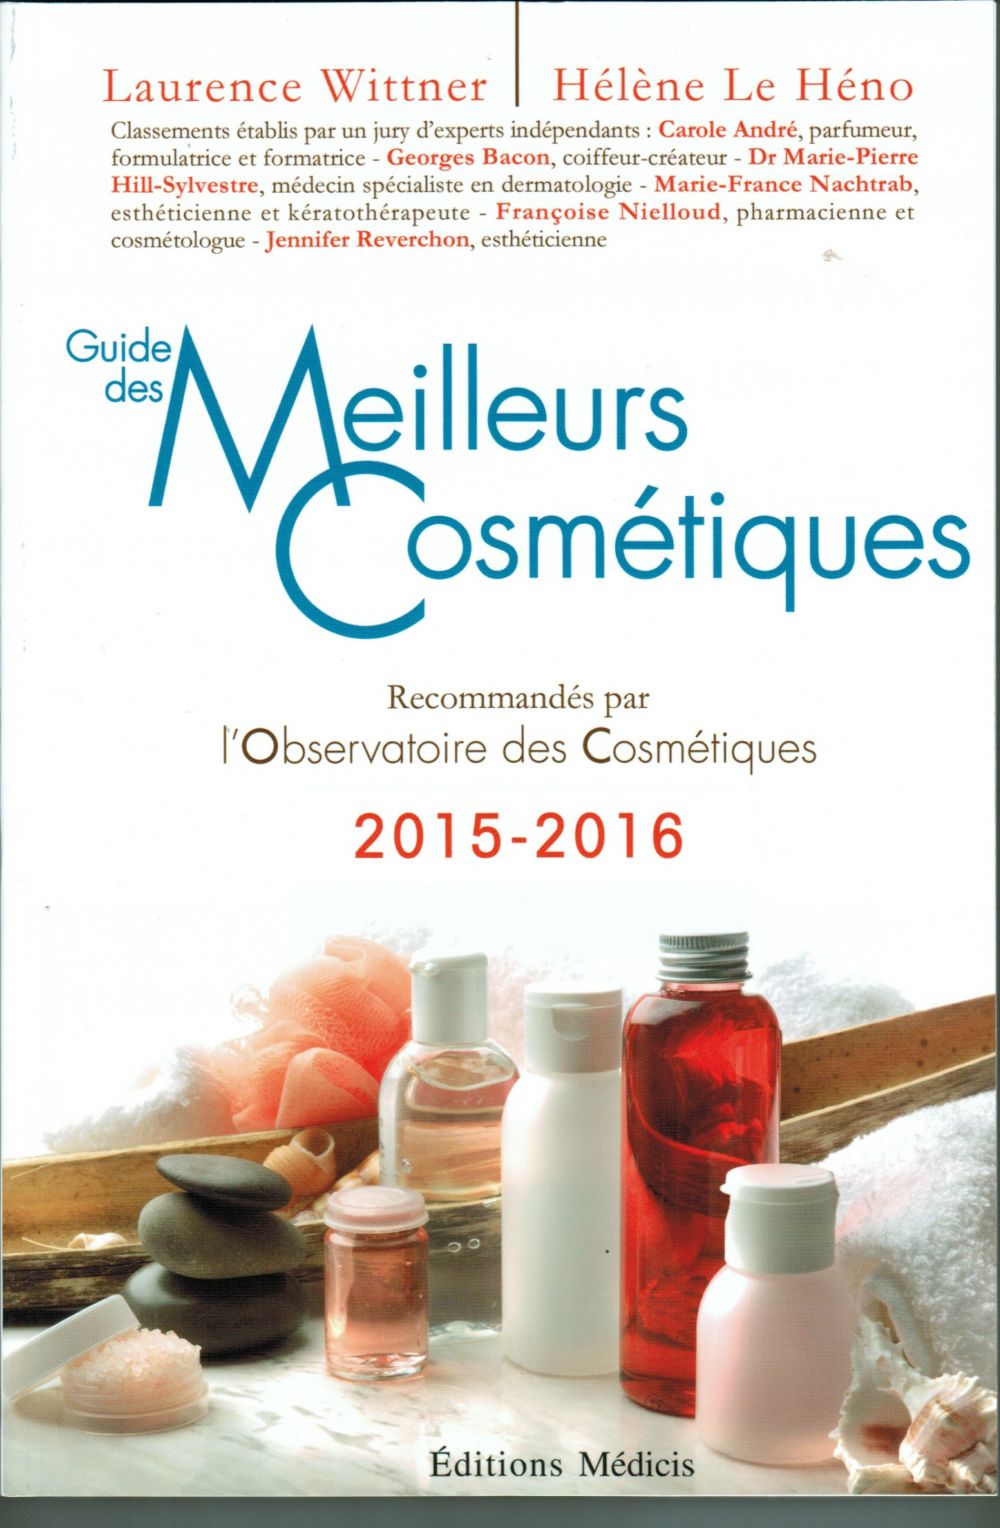 Guide des Meilleurs Cosmétiques 2015-2016